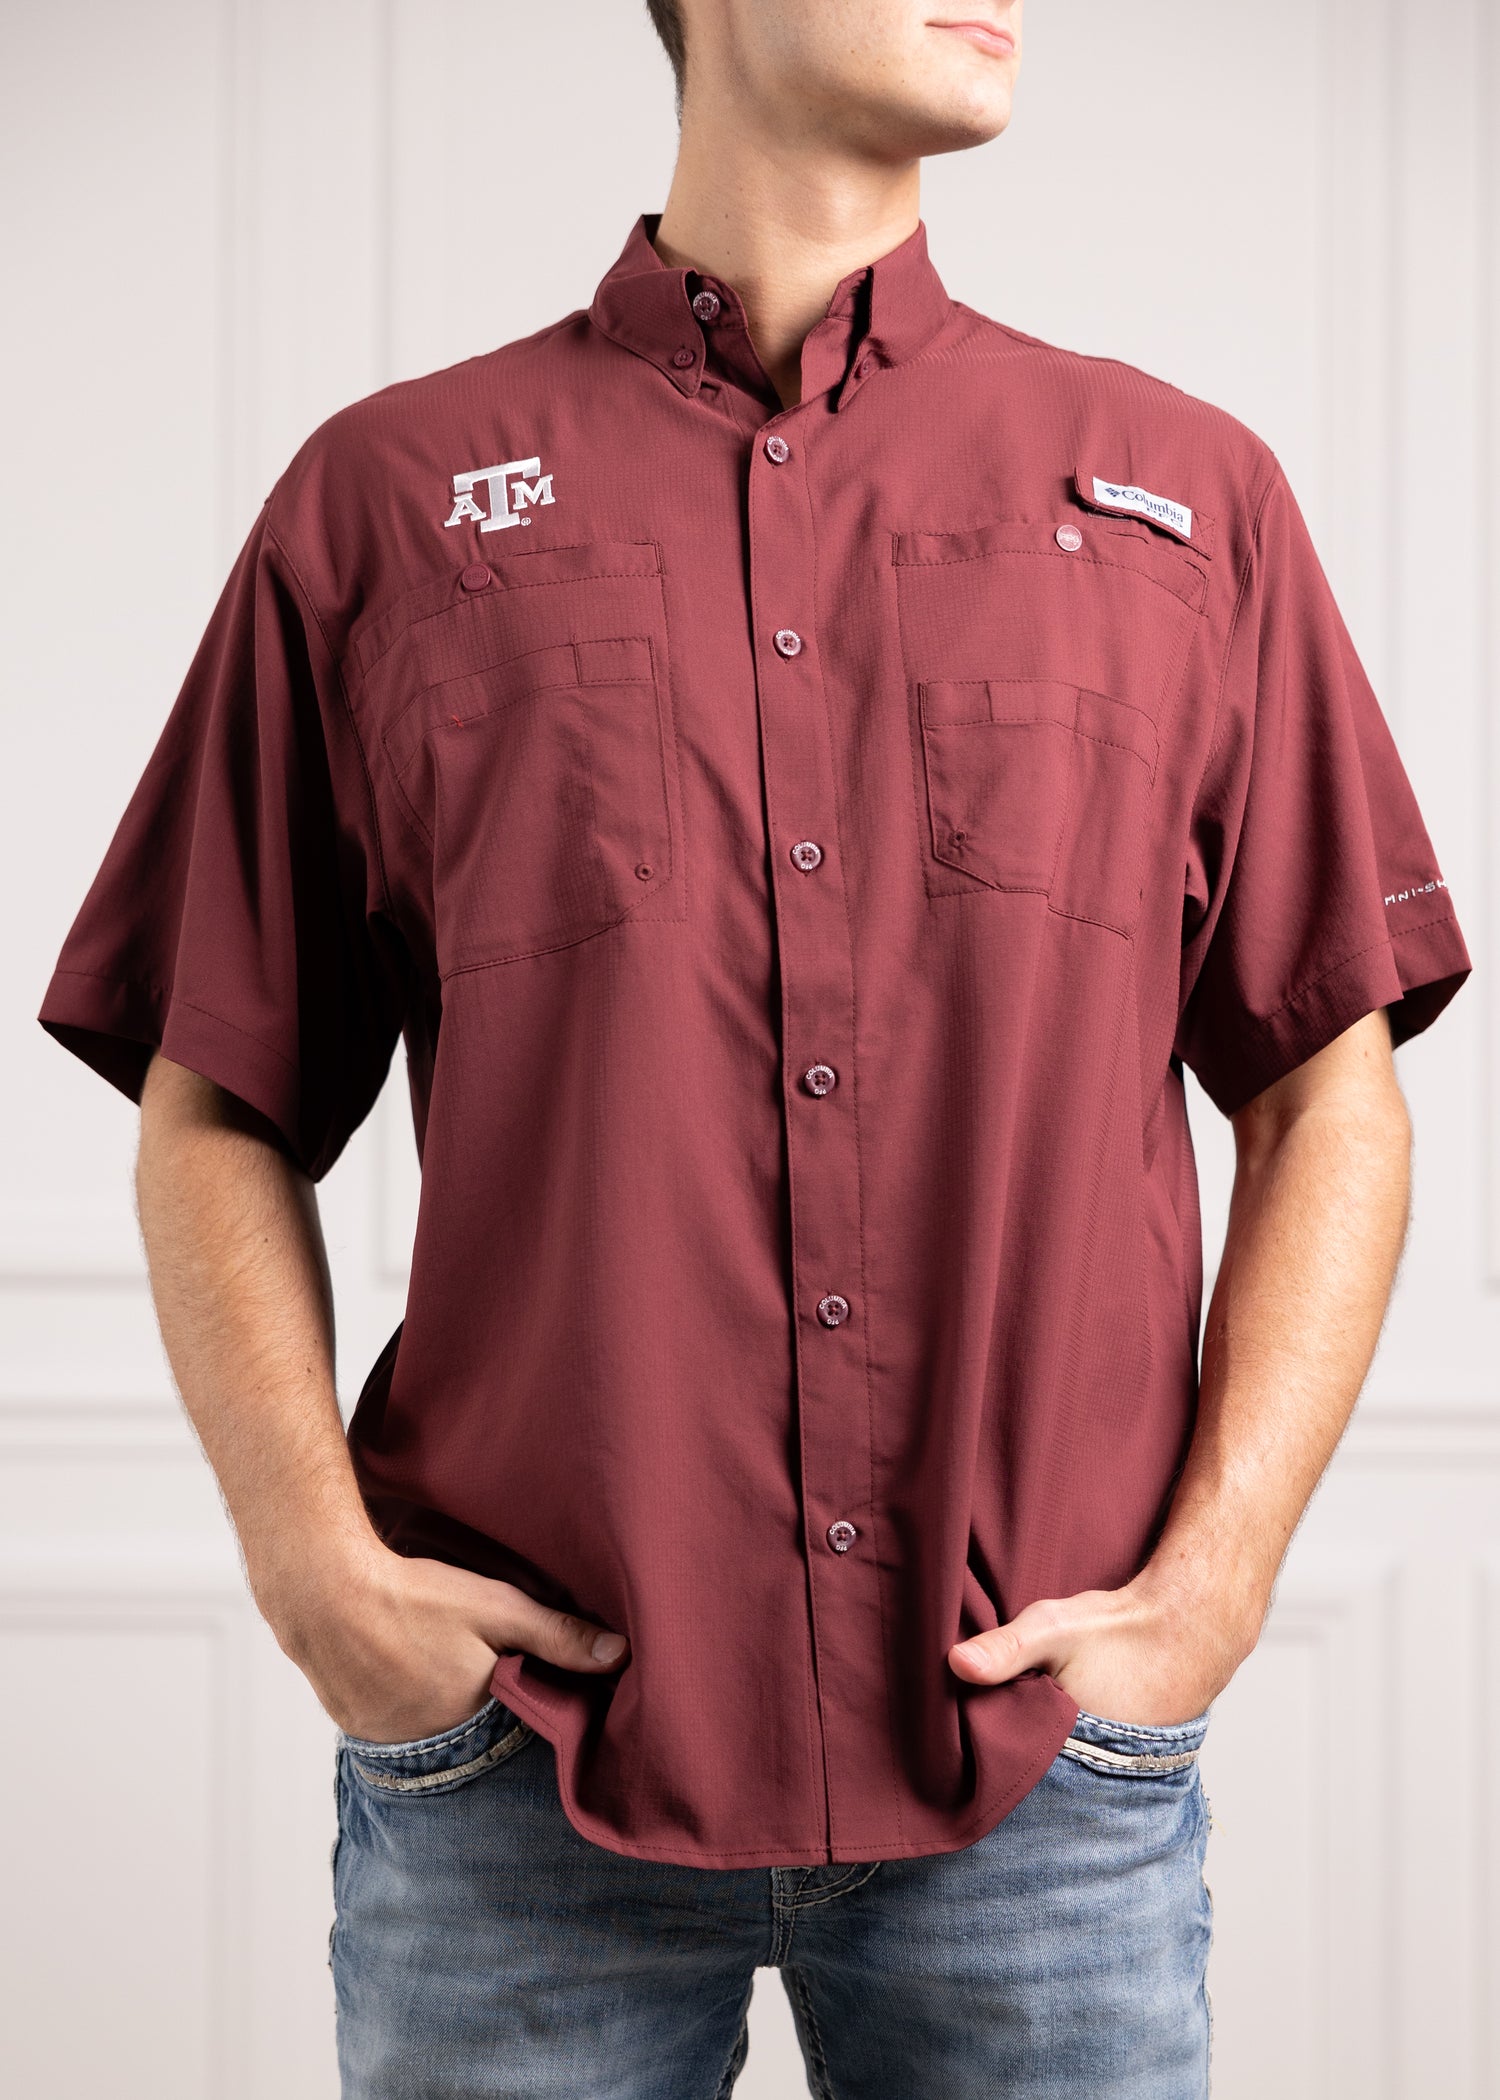 Columbia Men's NCAA Tamiami Shirt, Large